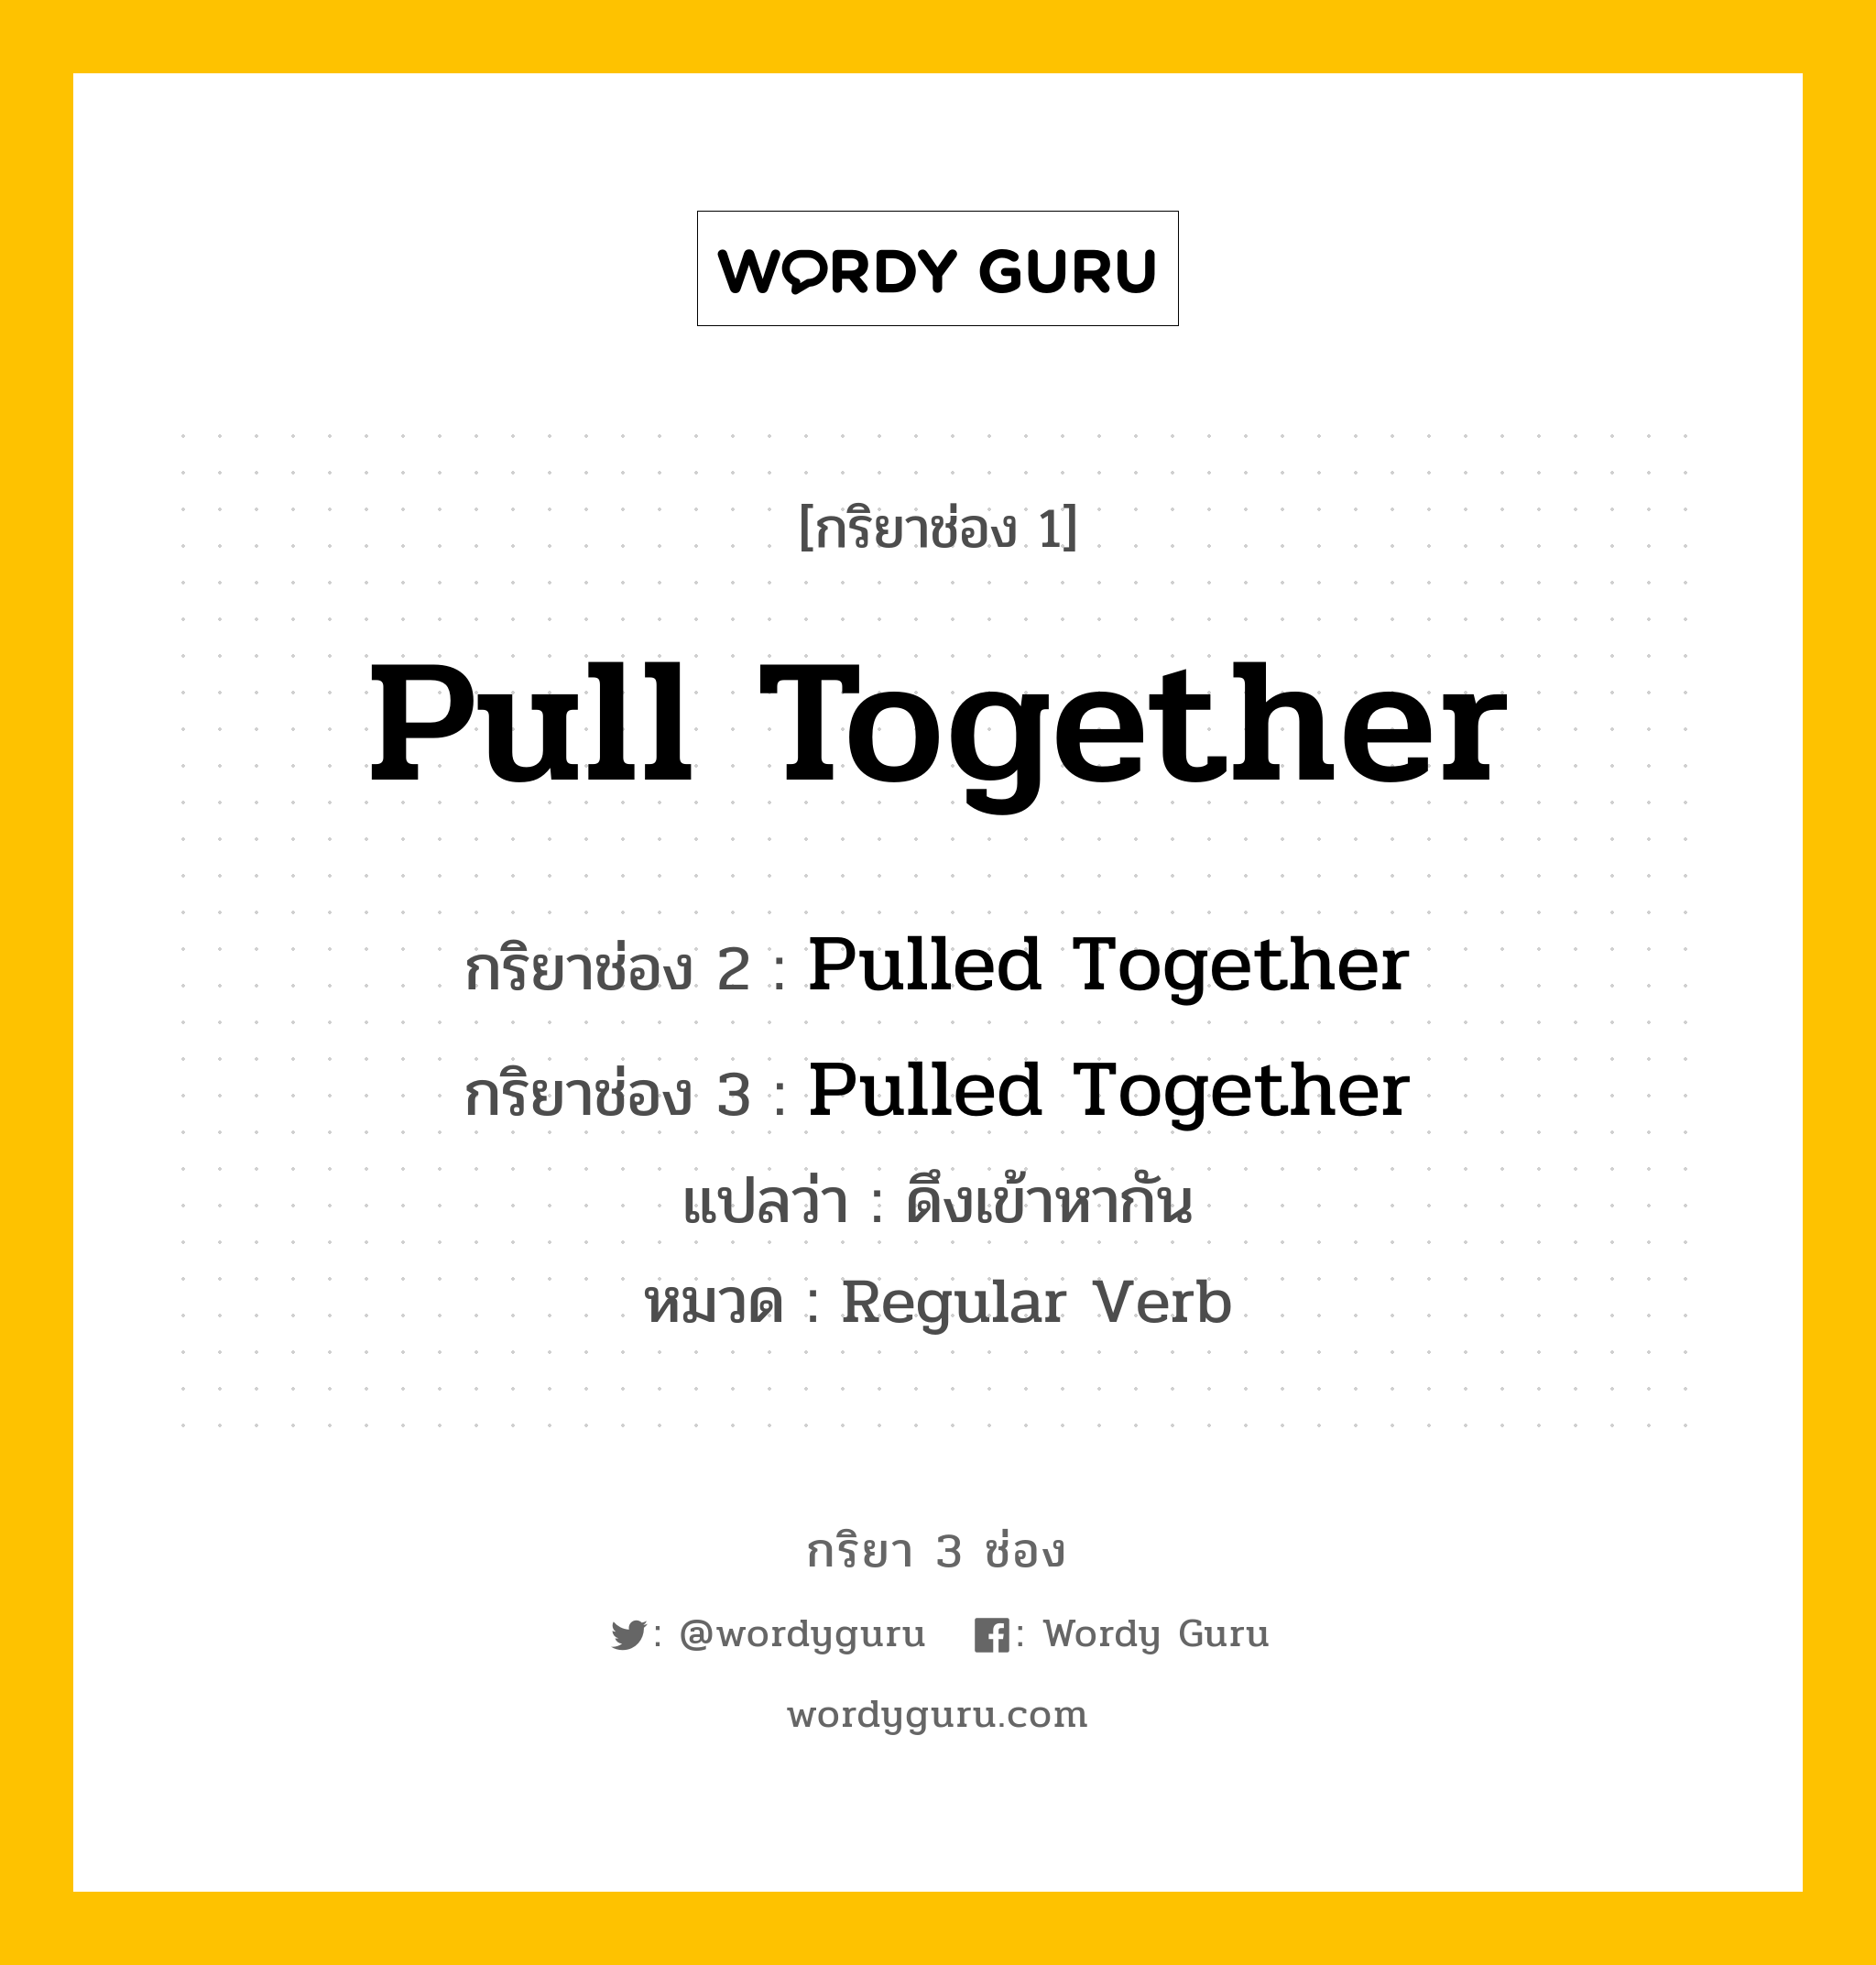 กริยา 3 ช่อง ของ Pull Together คืออะไร? มาดูคำอ่าน คำแปลกันเลย, กริยาช่อง 1 Pull Together กริยาช่อง 2 Pulled Together กริยาช่อง 3 Pulled Together แปลว่า ดึงเข้าหากัน หมวด Regular Verb หมวด Regular Verb